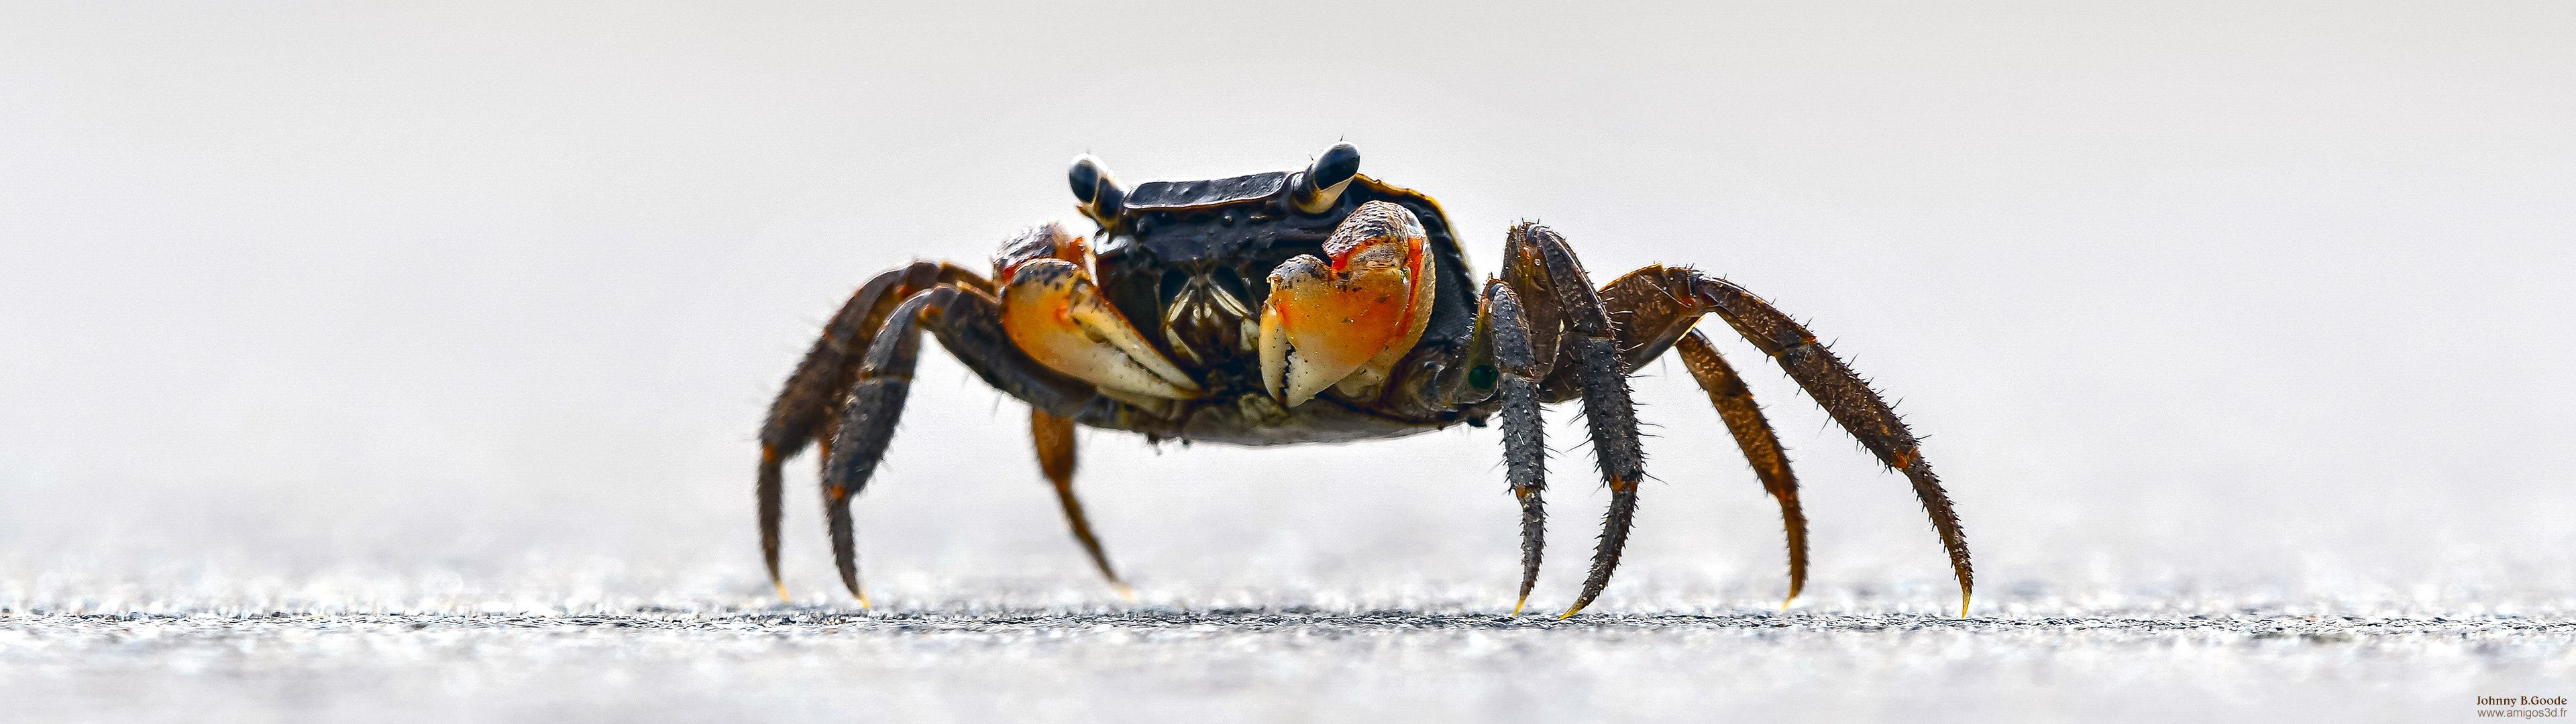 020-crab